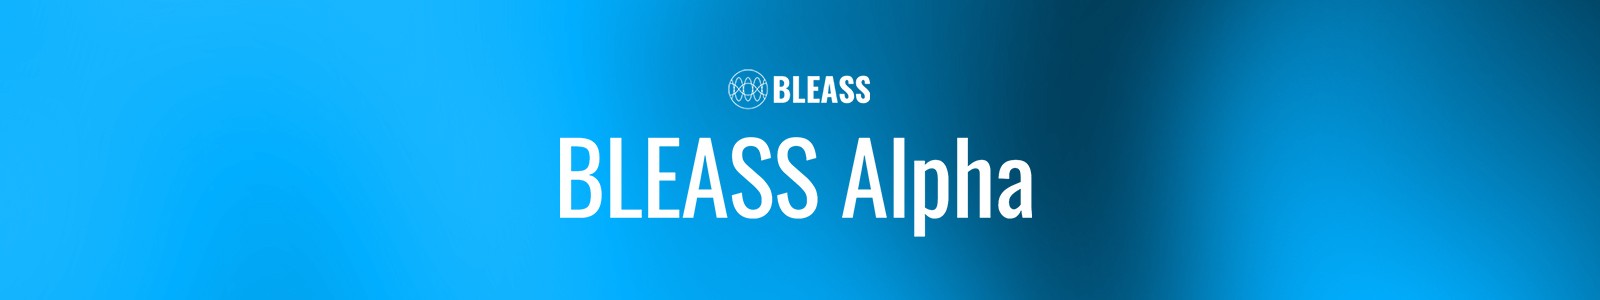 Bleass Synth Alpha Bundle